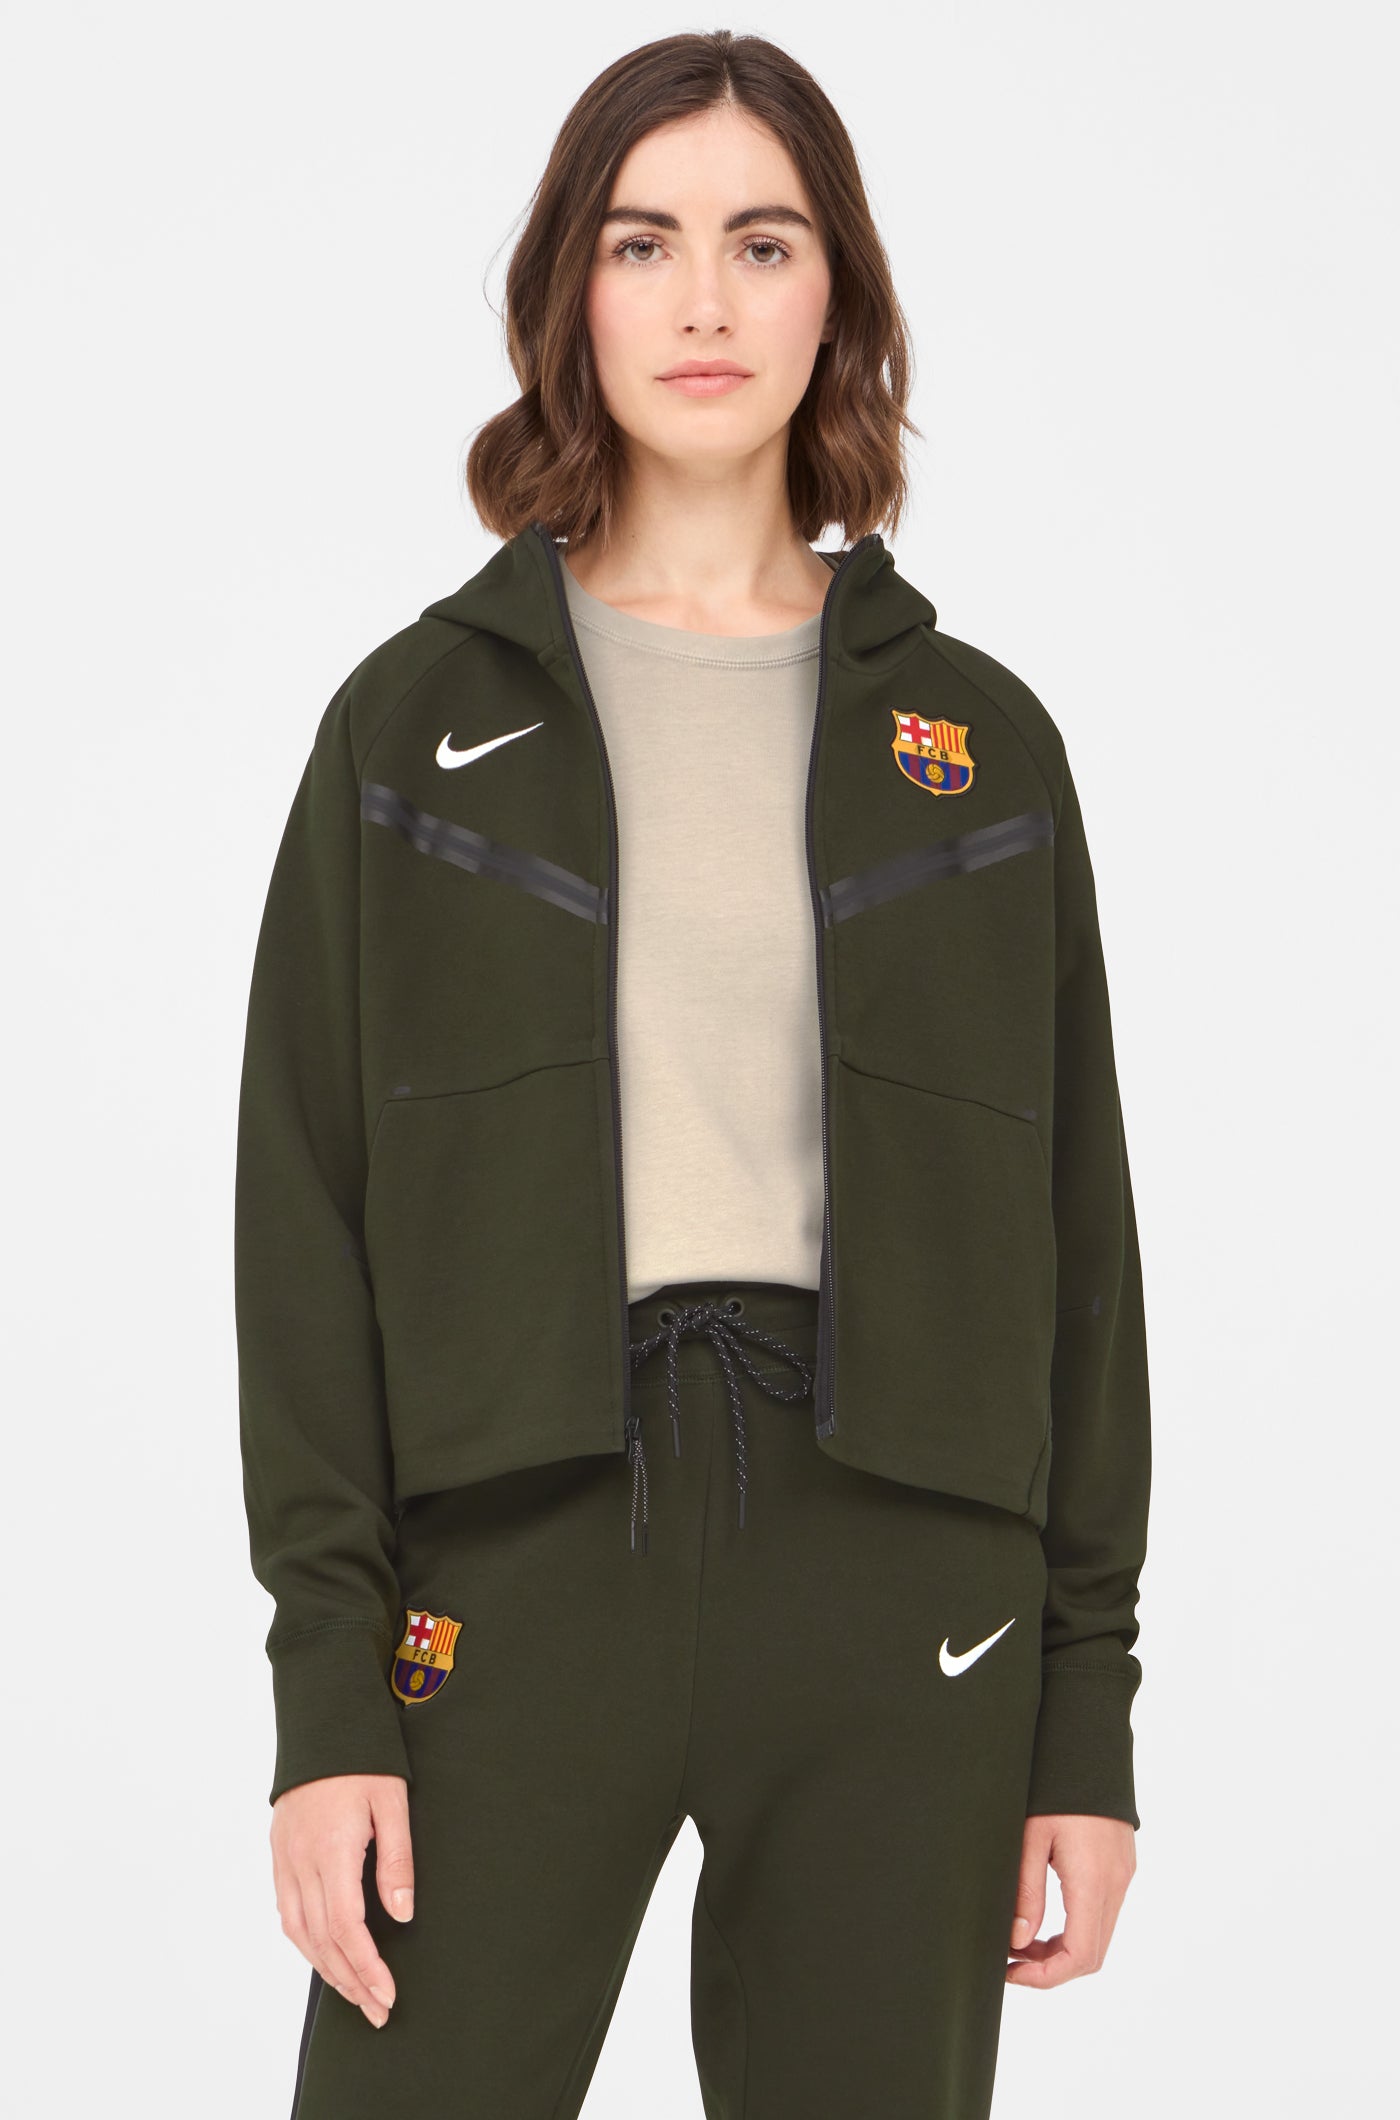 Grün Jacke Barça Nike - Damen